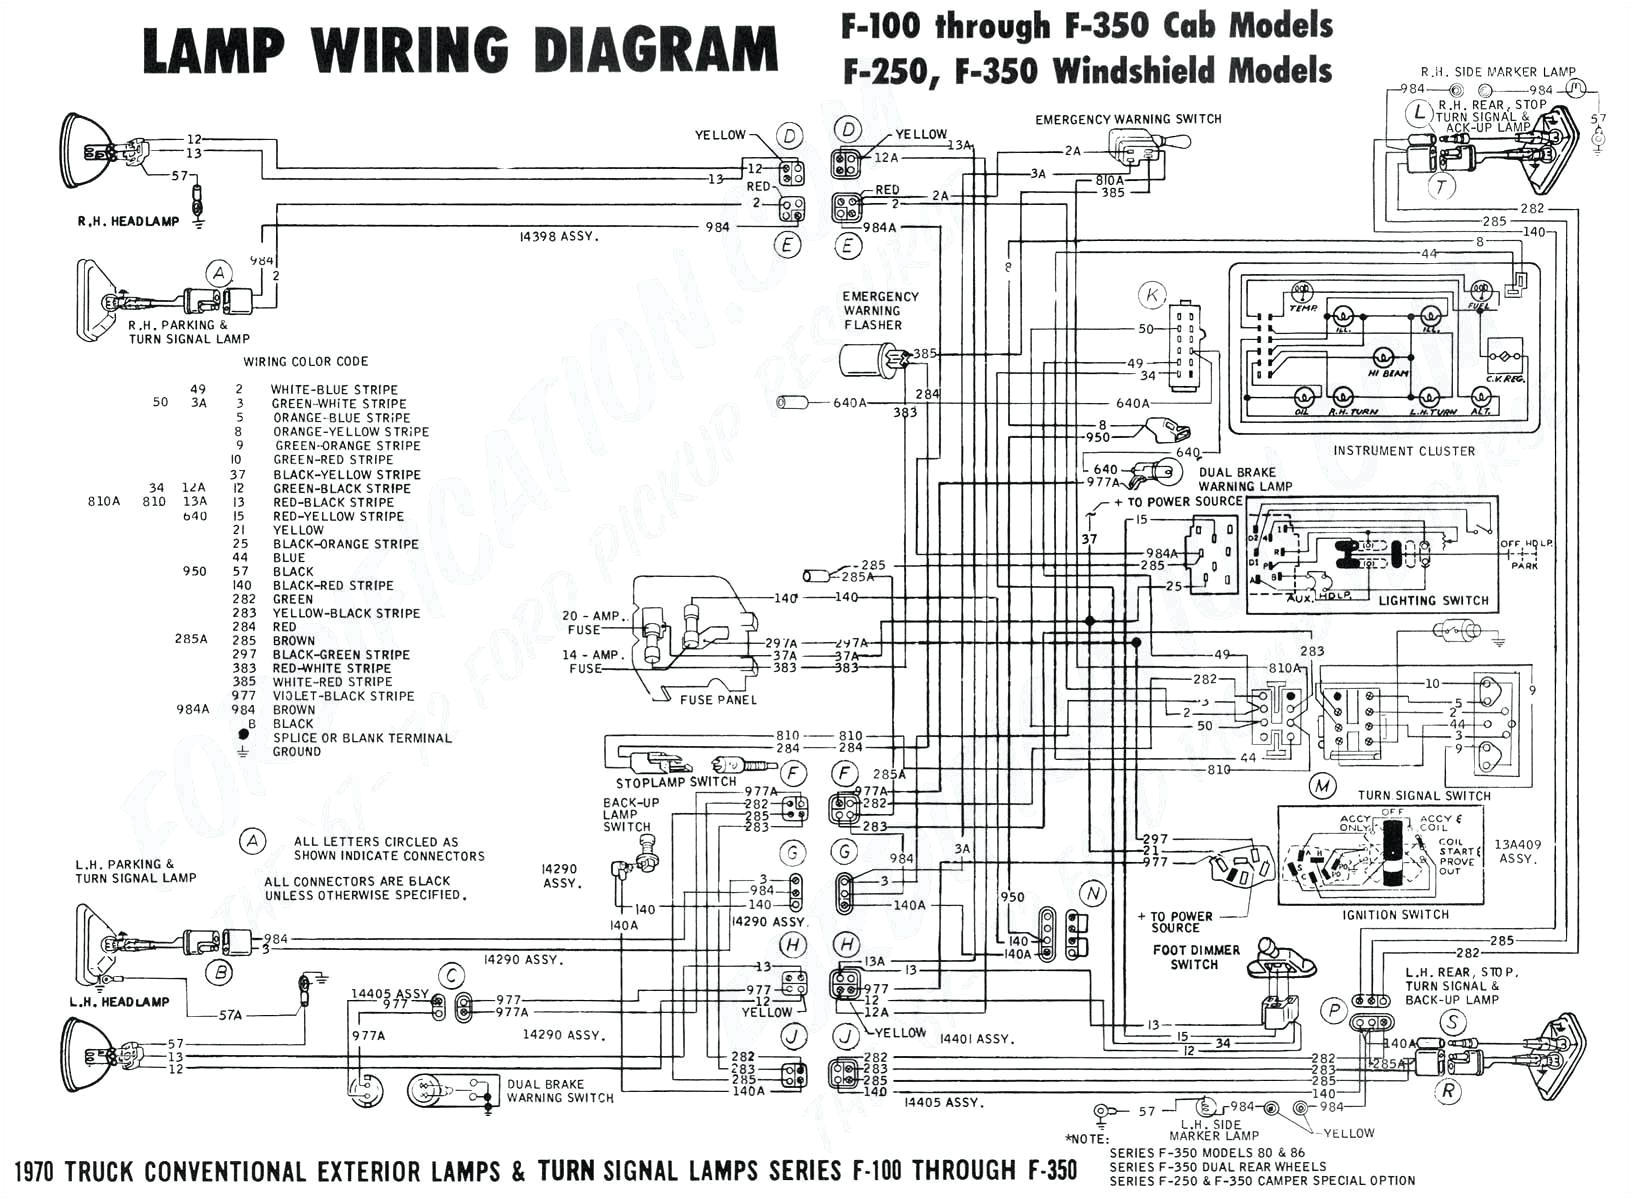 wiring diagram f lucas magdyno or sep dynamo du142 du42 wiring wiring diagram f lucas magdyno or sep dynamo du142 du42